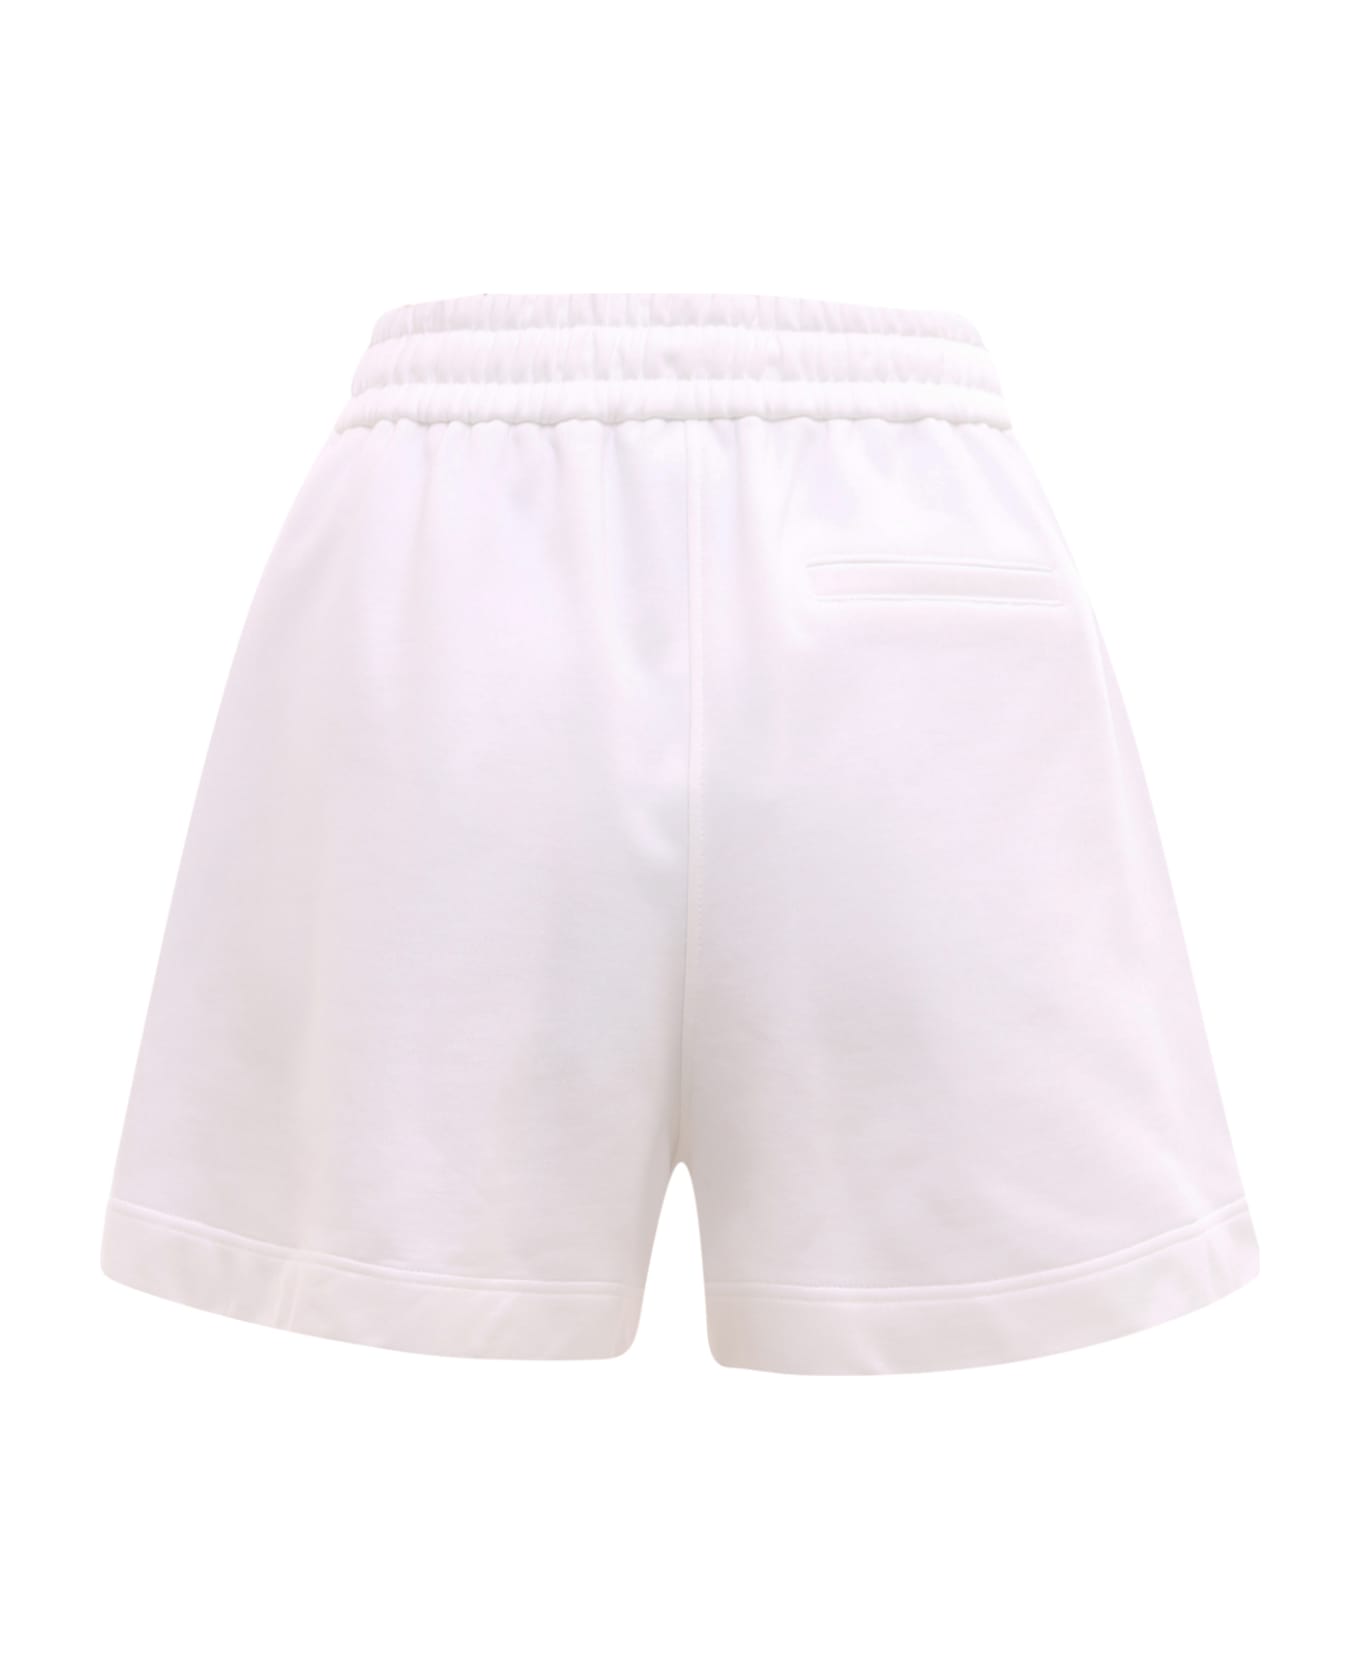 K Krizia Shorts - White ショートパンツ